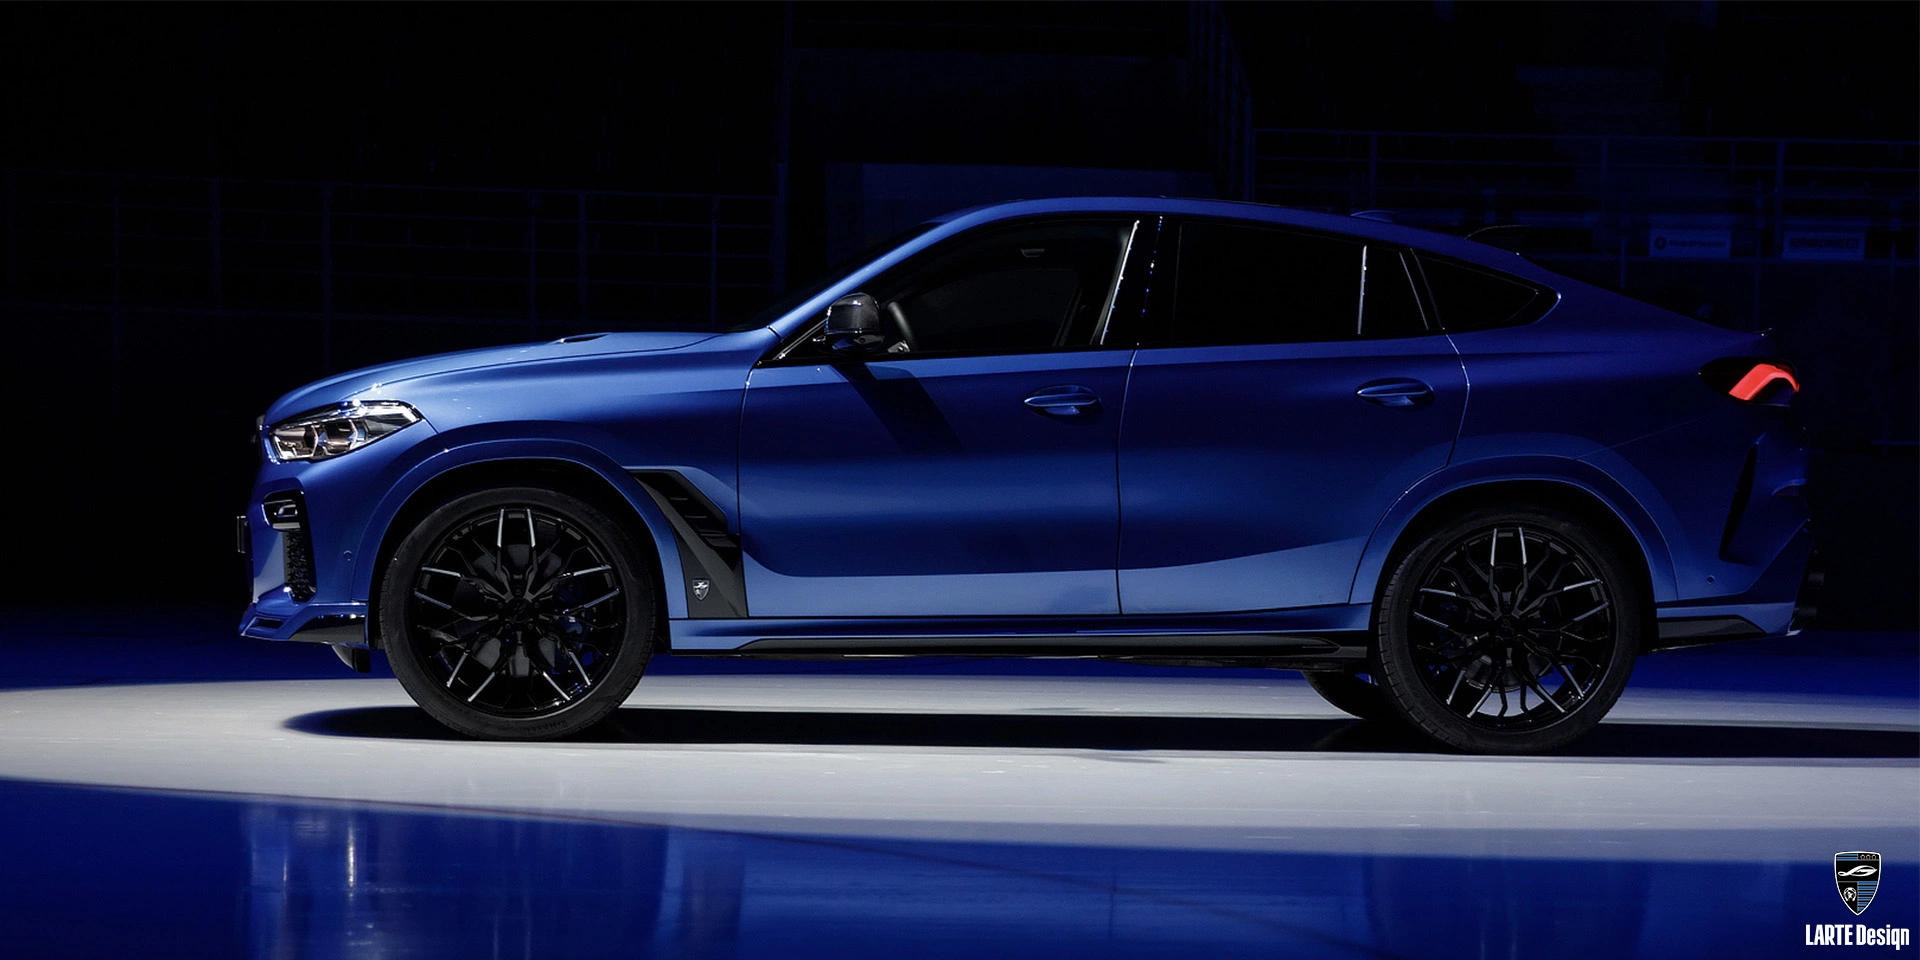 Erwerben Sie geschmiedete Leichtmetallräder für den LARTE Performance BMW X6 M Sport G06 in Phytonic Blue Metallic